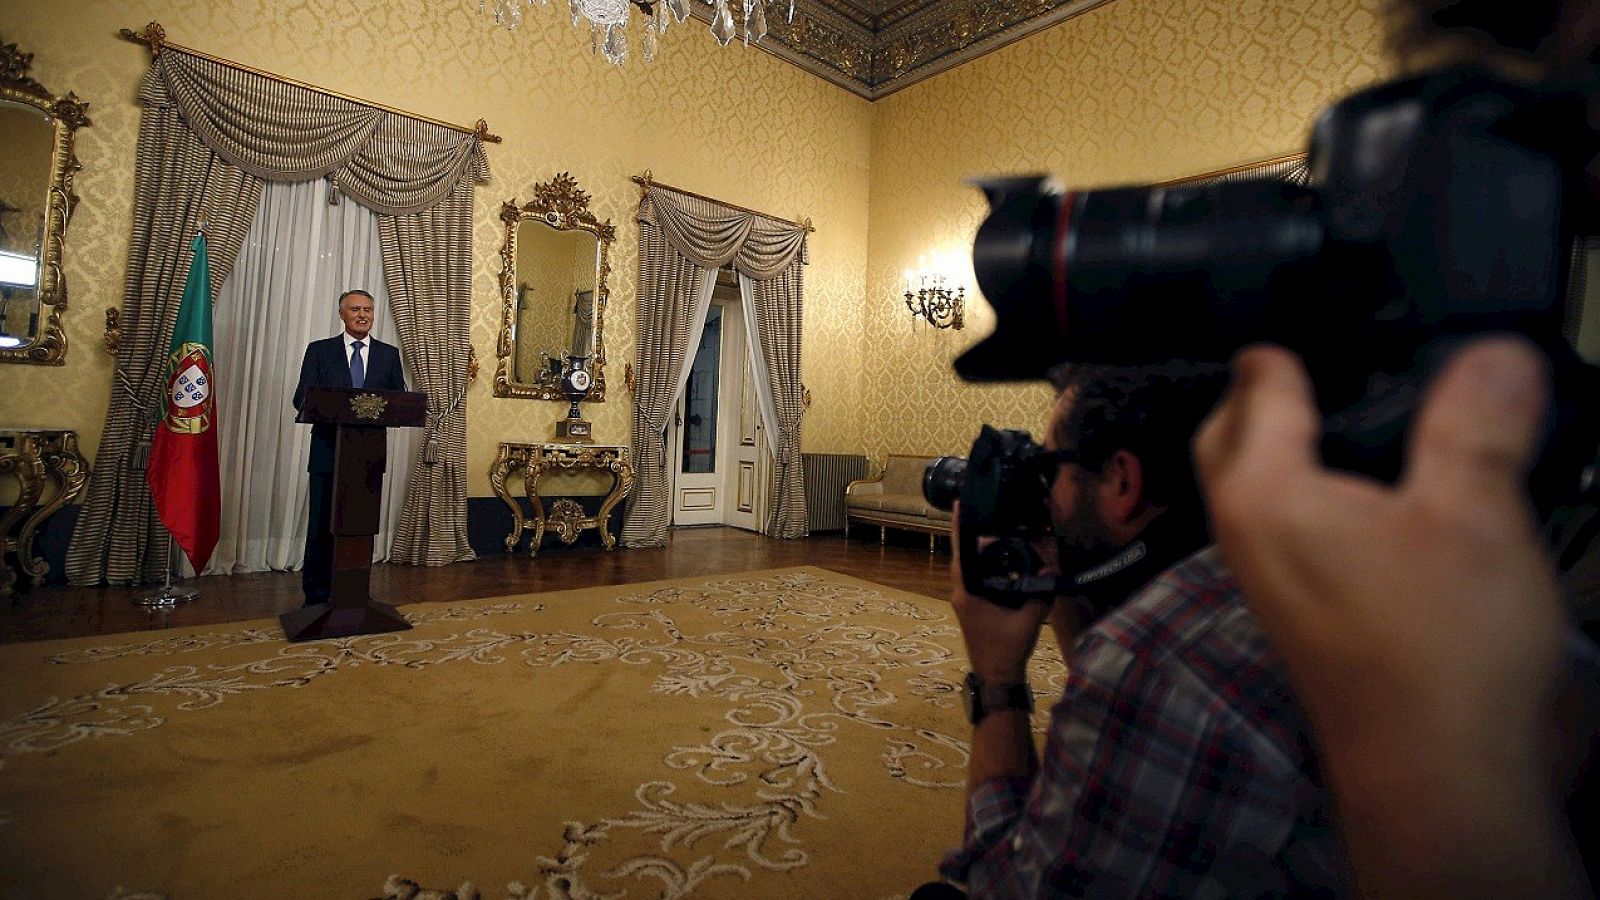 El presidente de Portugal, Anibal Cavaco Silva, en una declaración en el palacio de Belem, el 22 de octubre de 2015. REUTERS/Rafael Marchante